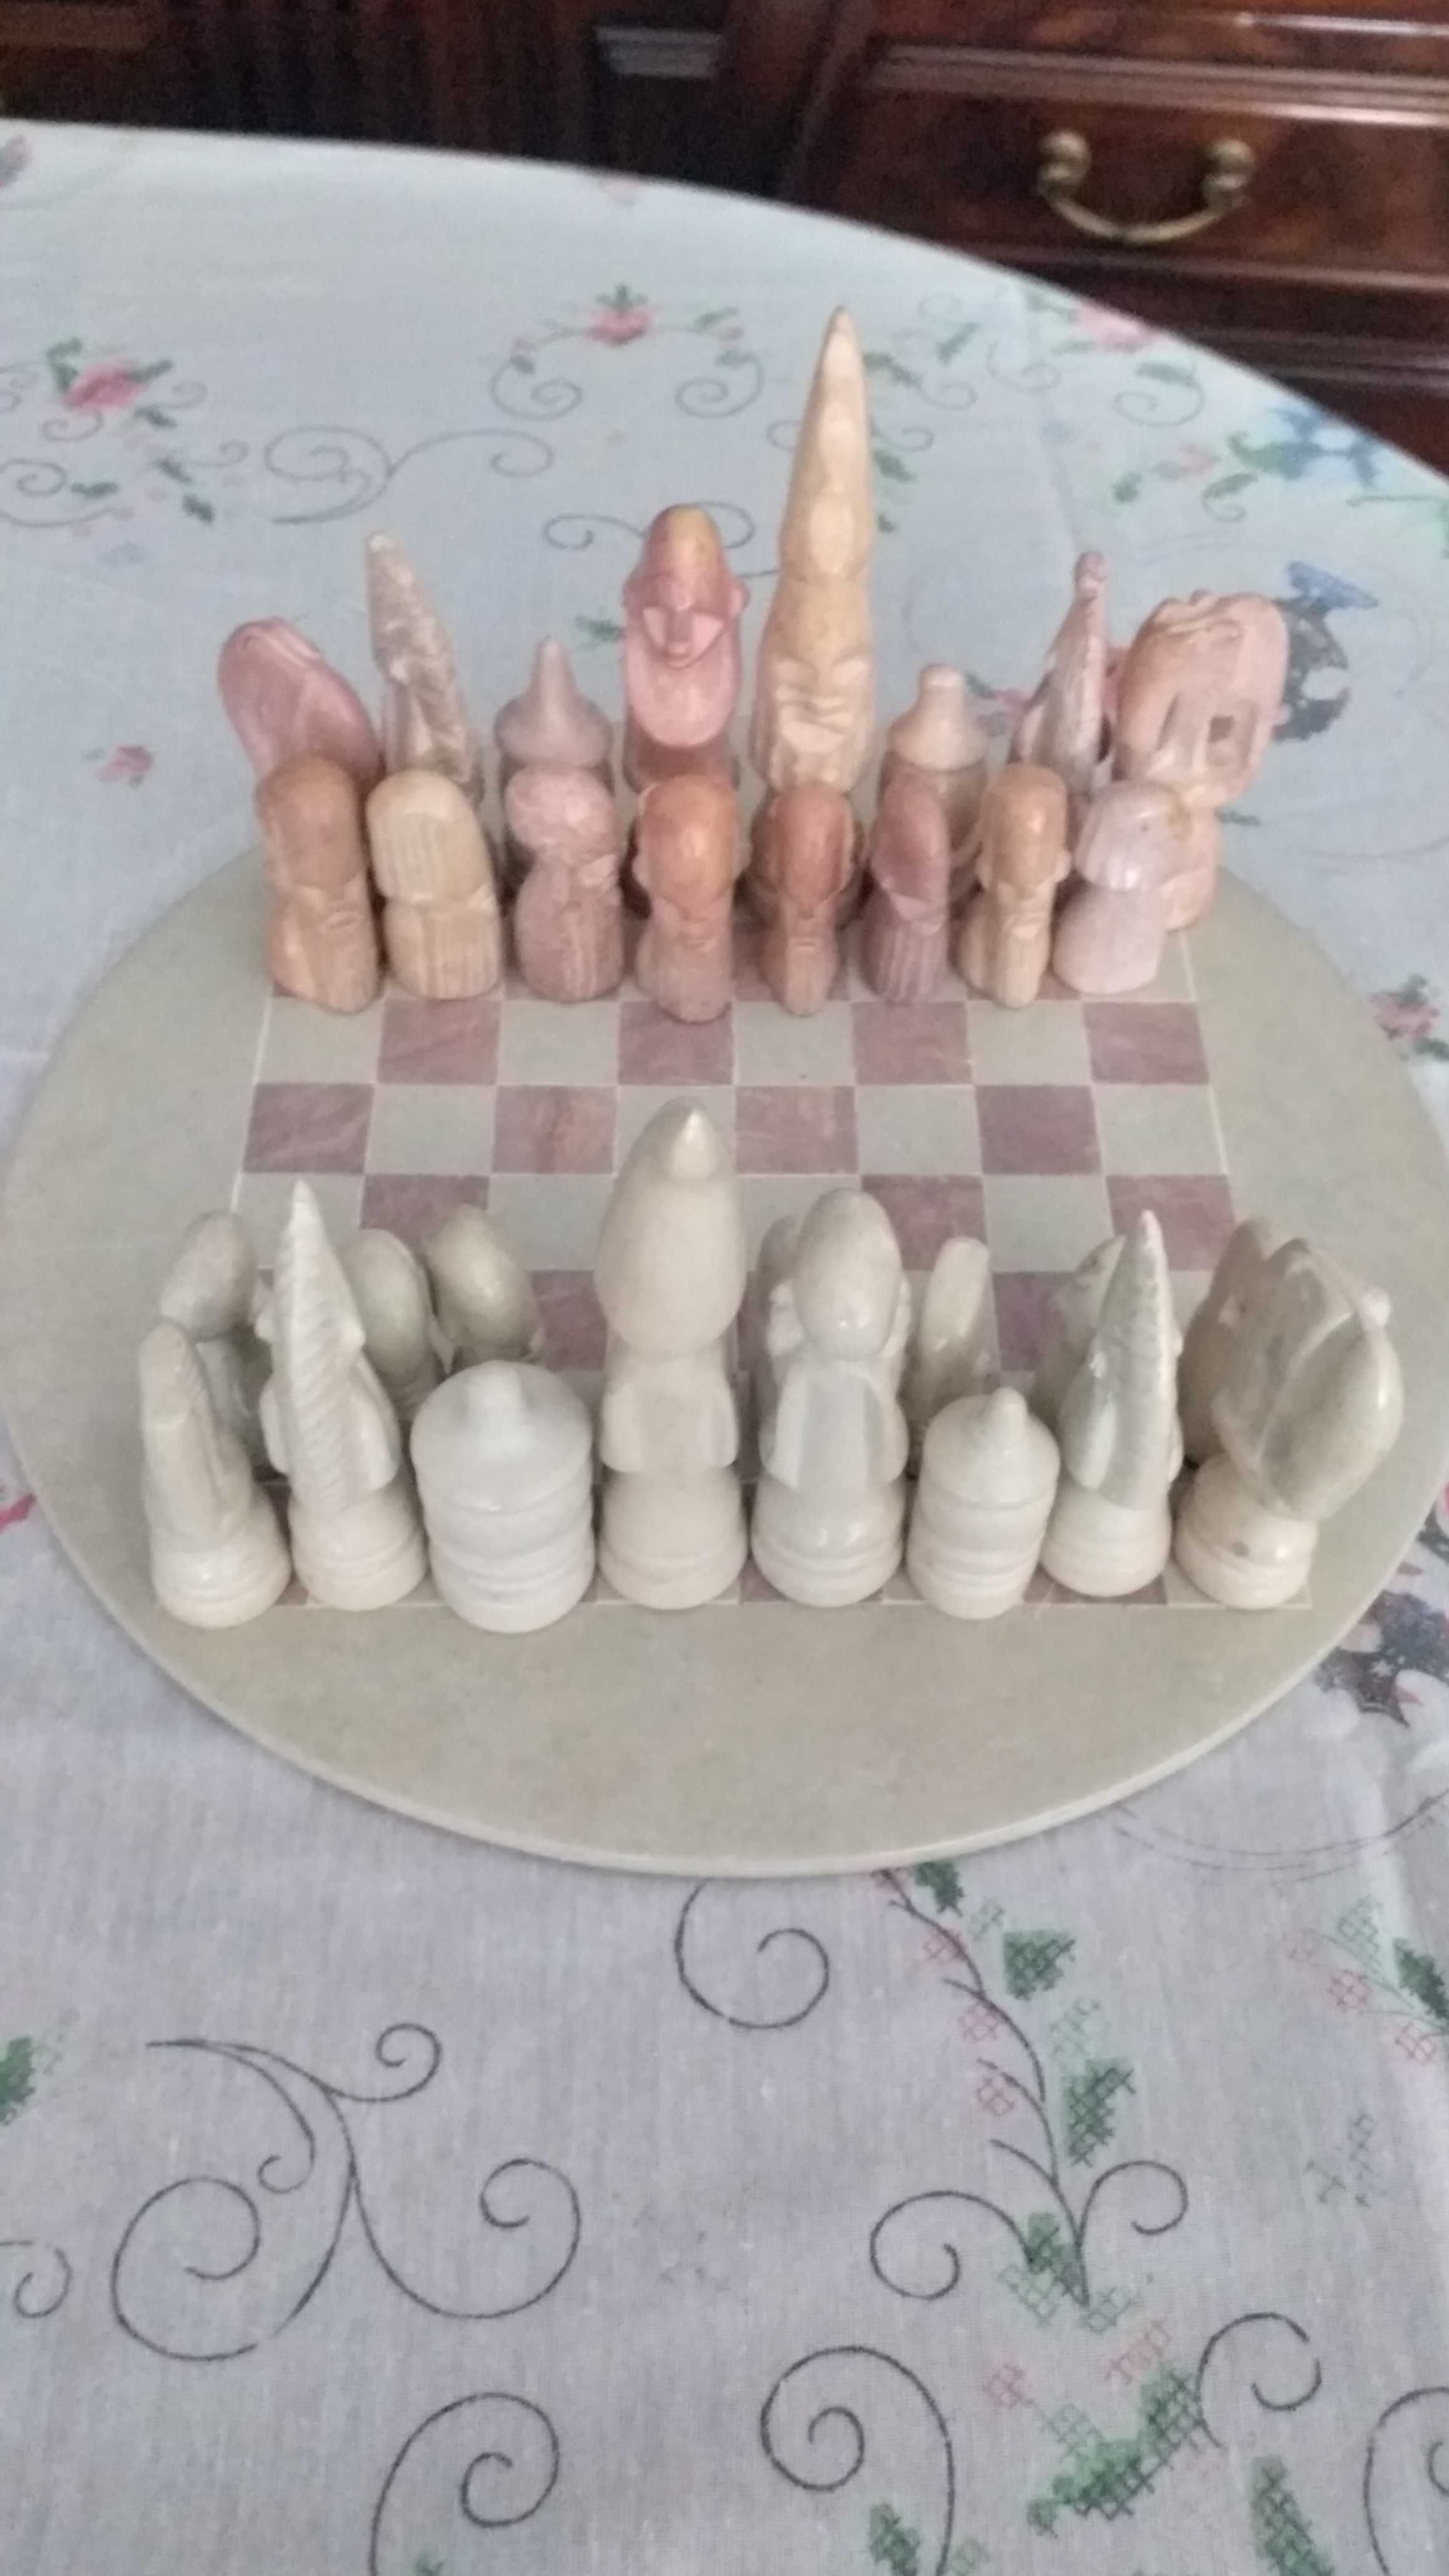 Vendo xadrez em pedra totalmente novo